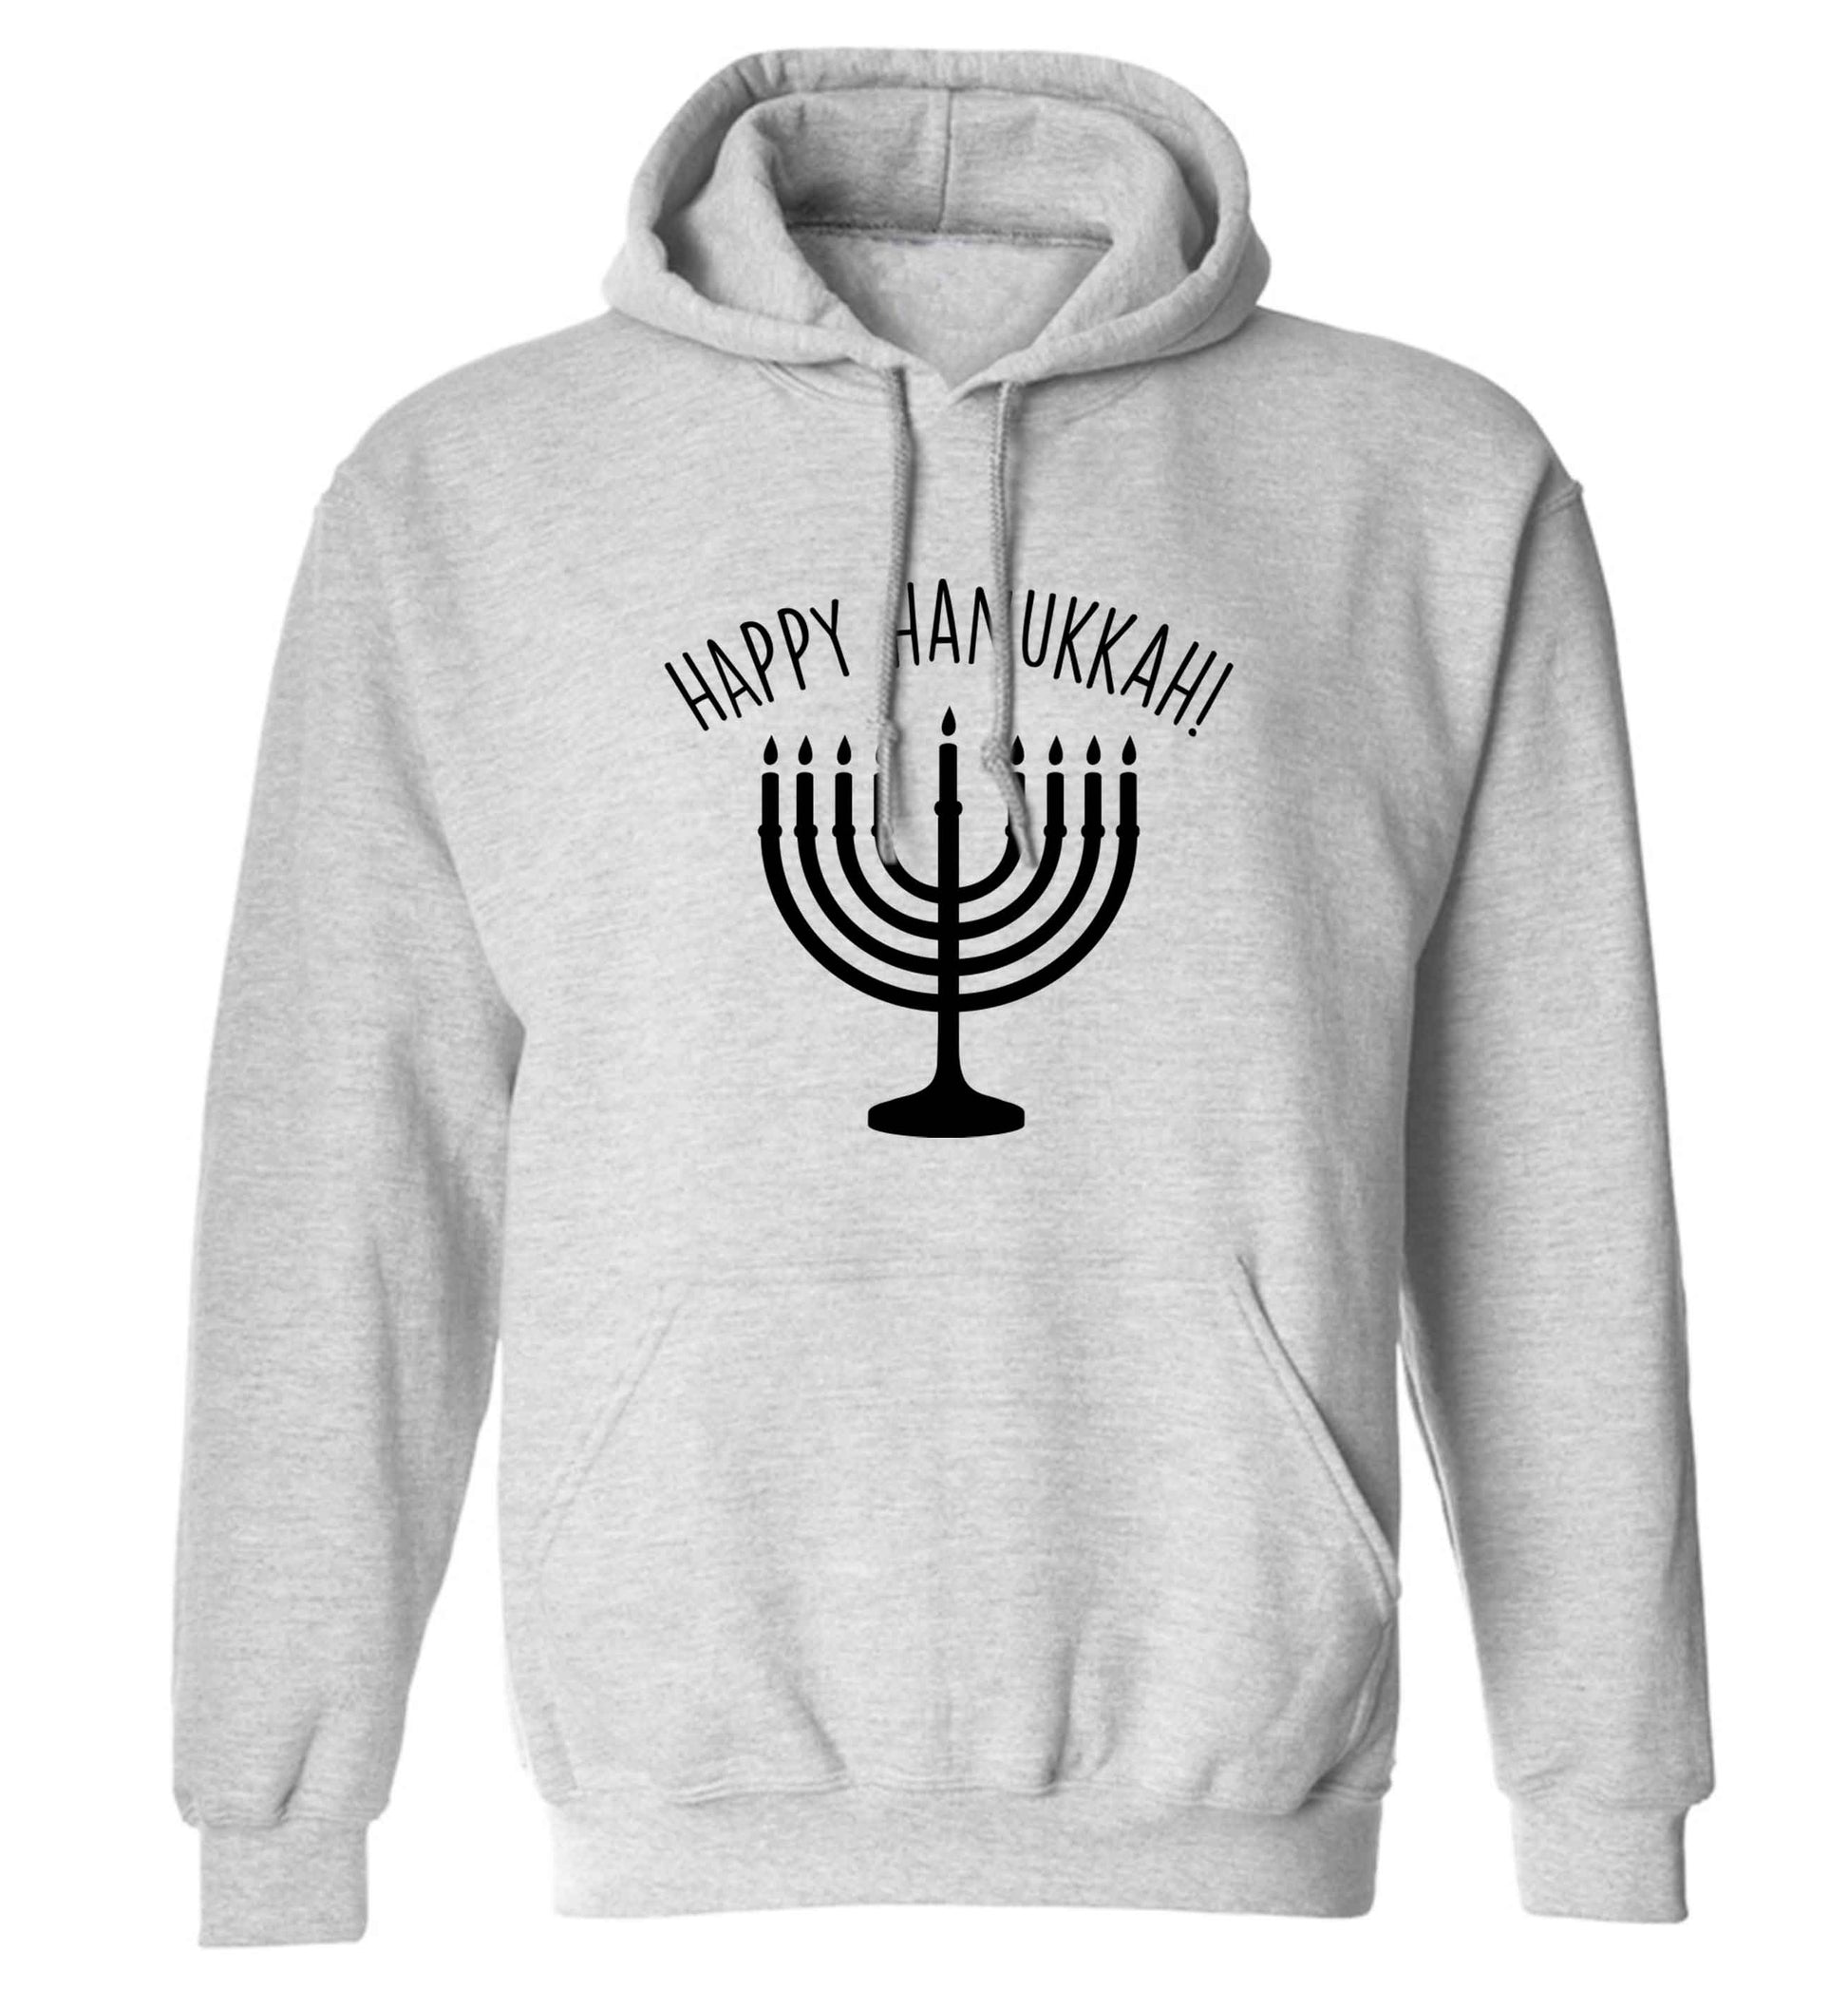 Happy hanukkah adults unisex grey hoodie 2XL